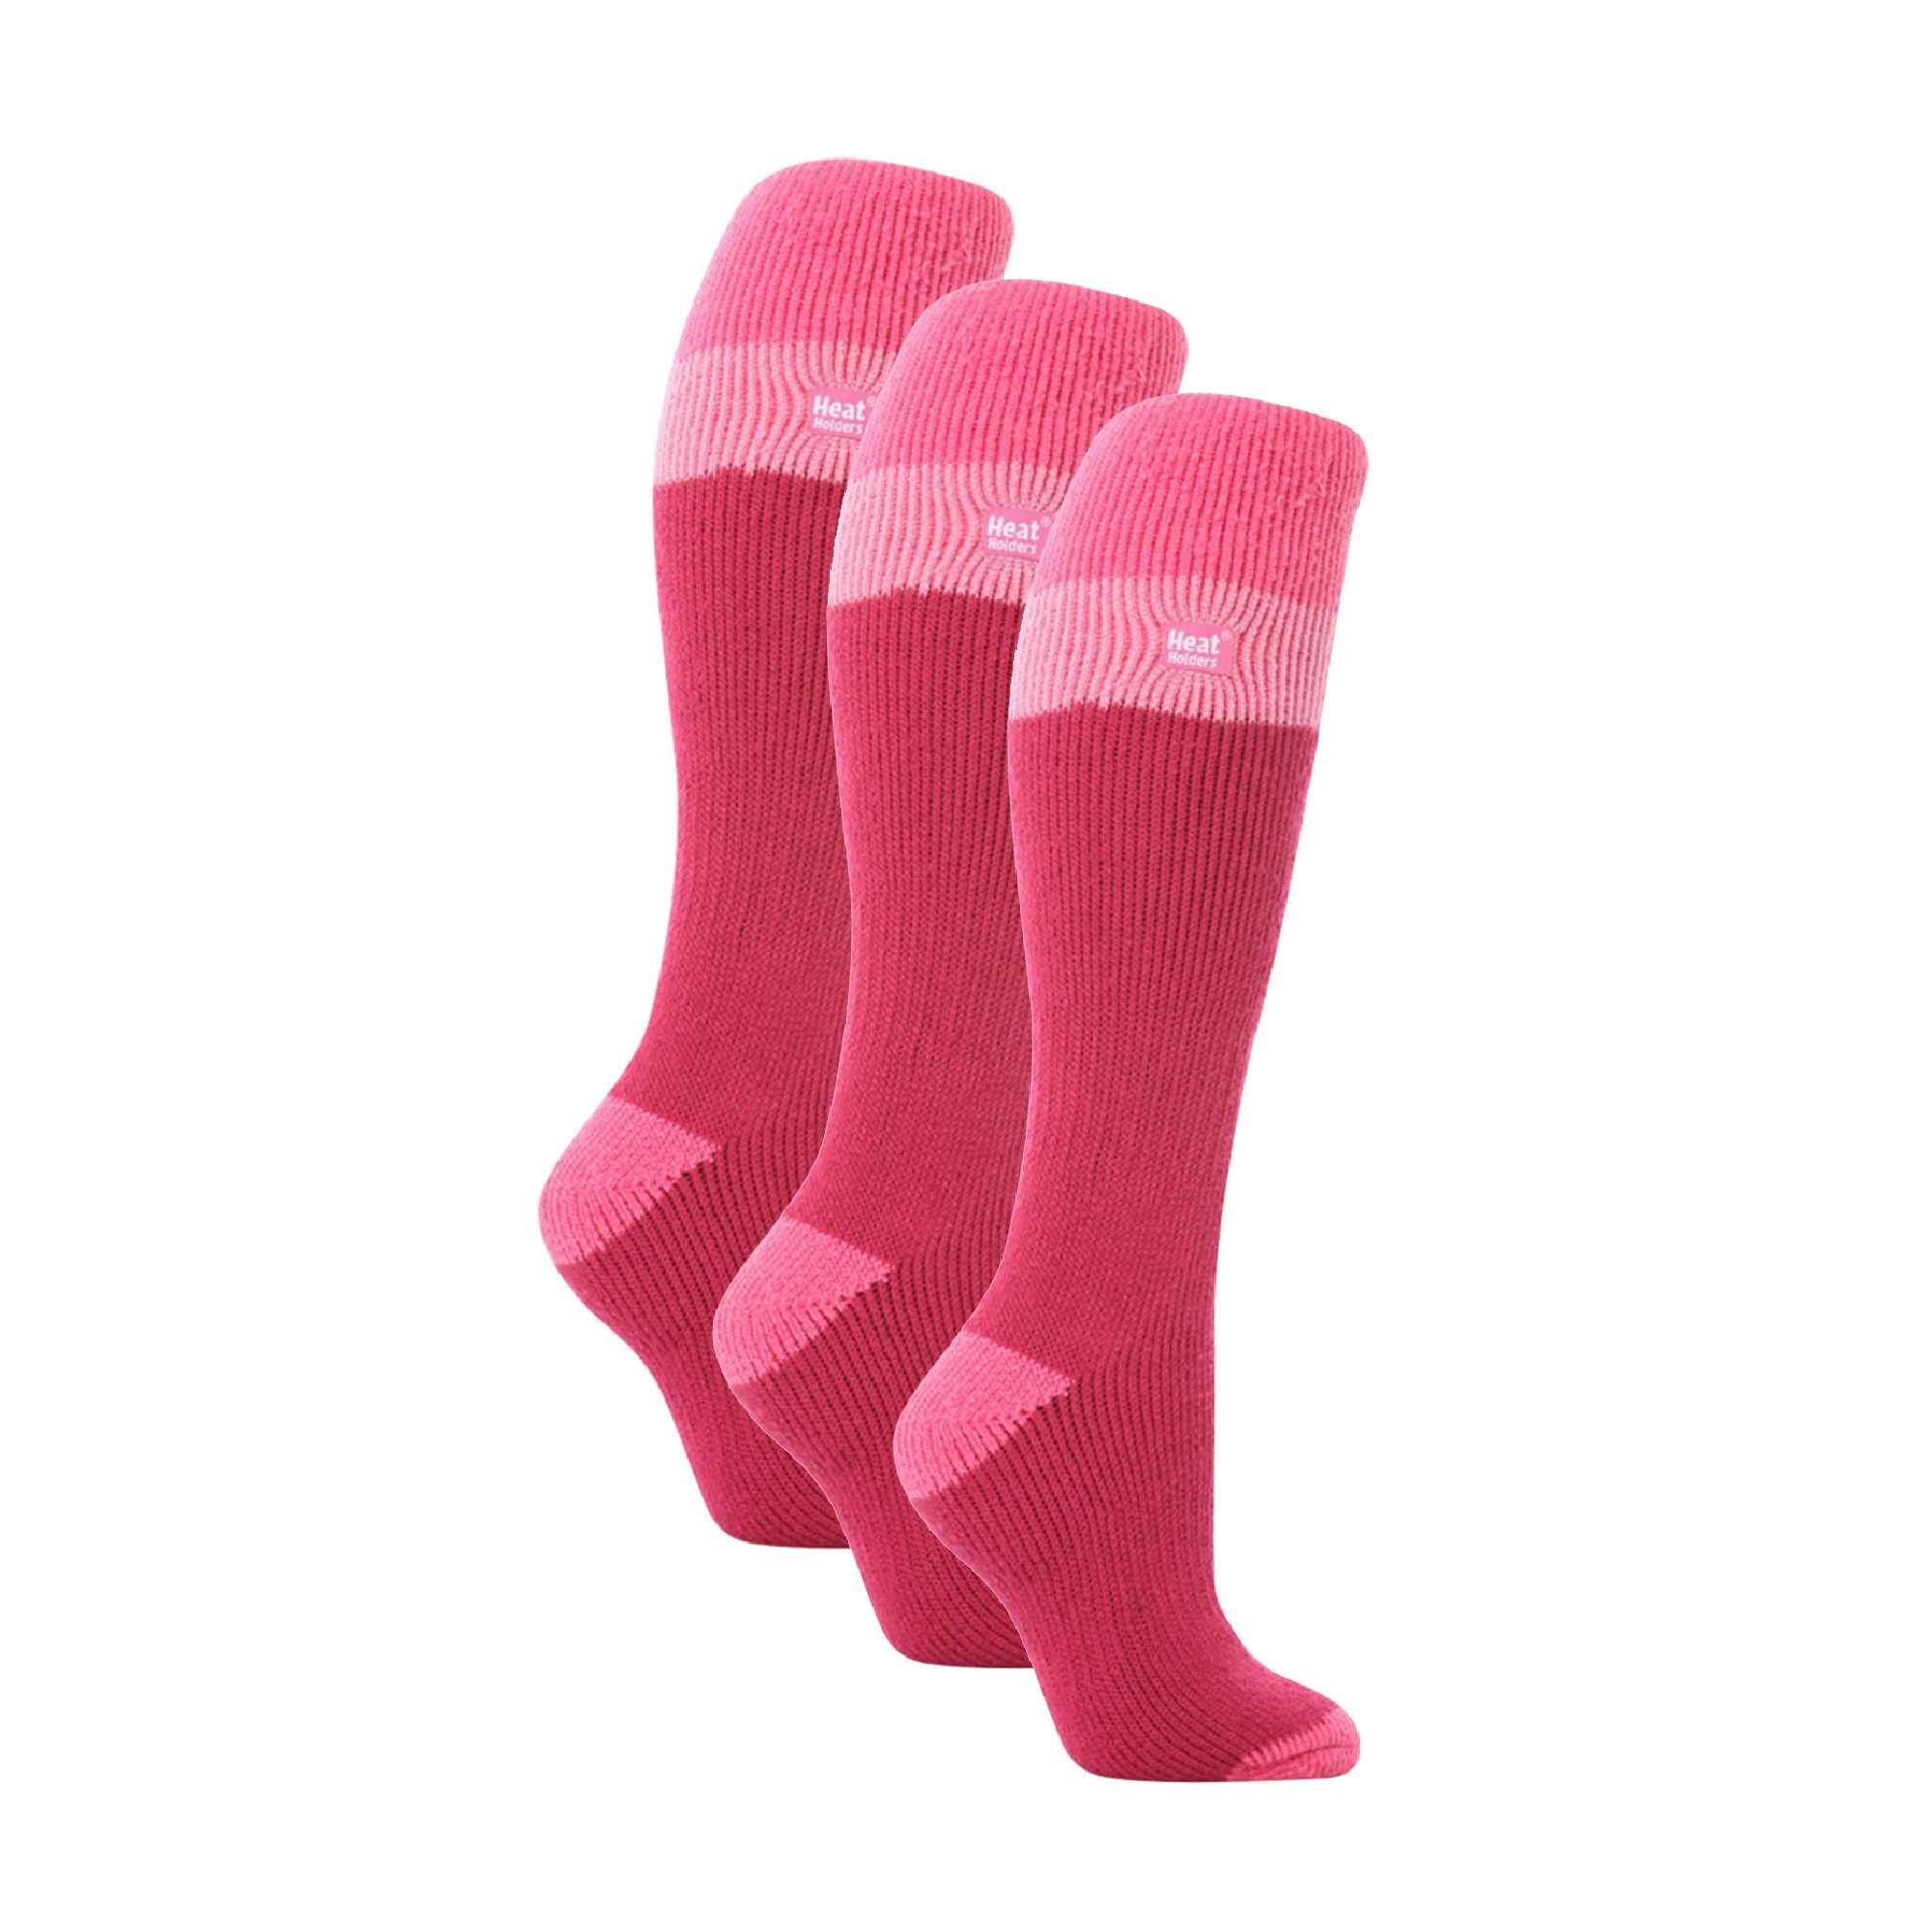 3 Pack Ladies Winter 2.3 TOG Thermal Long Knee High Ski Socks 1/4